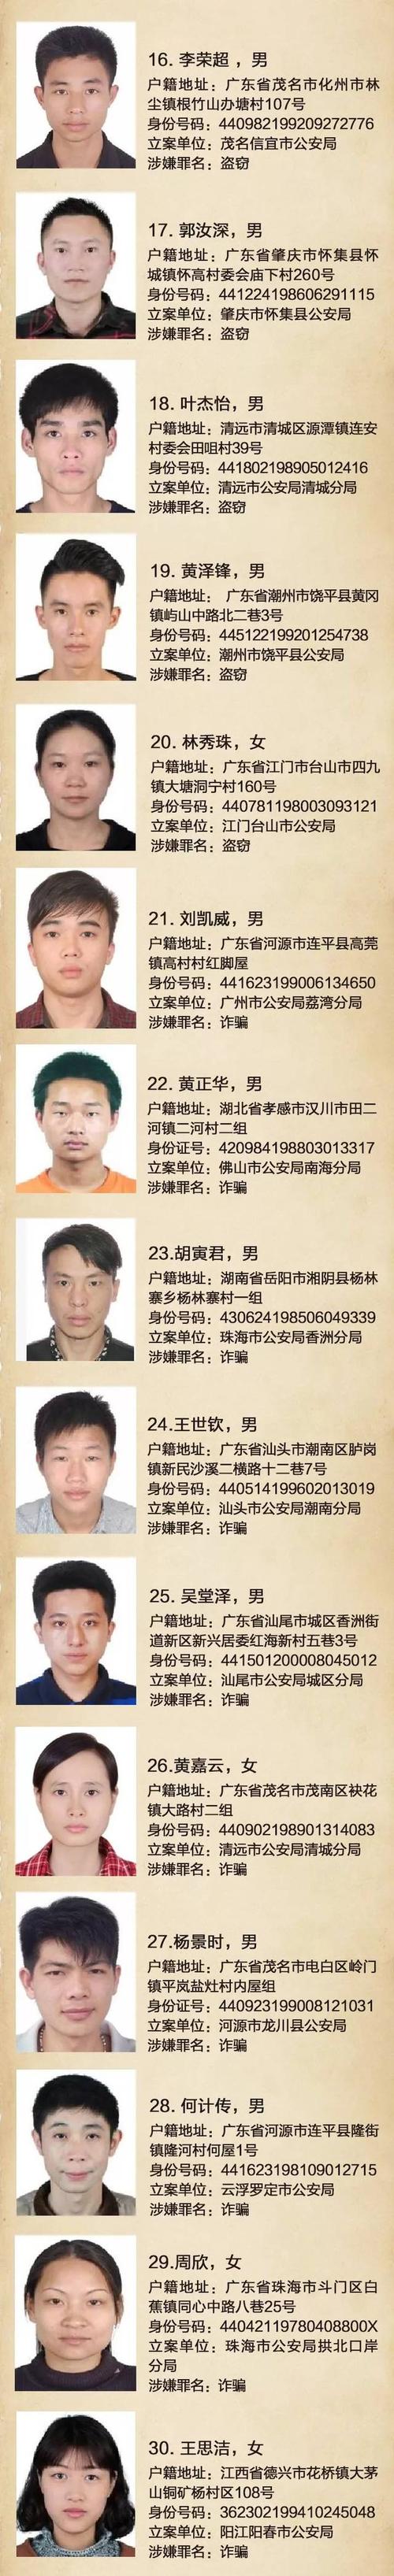 广东公开悬赏2万元通缉30名在逃嫌犯!认清这2张河源脸,看到快报警!